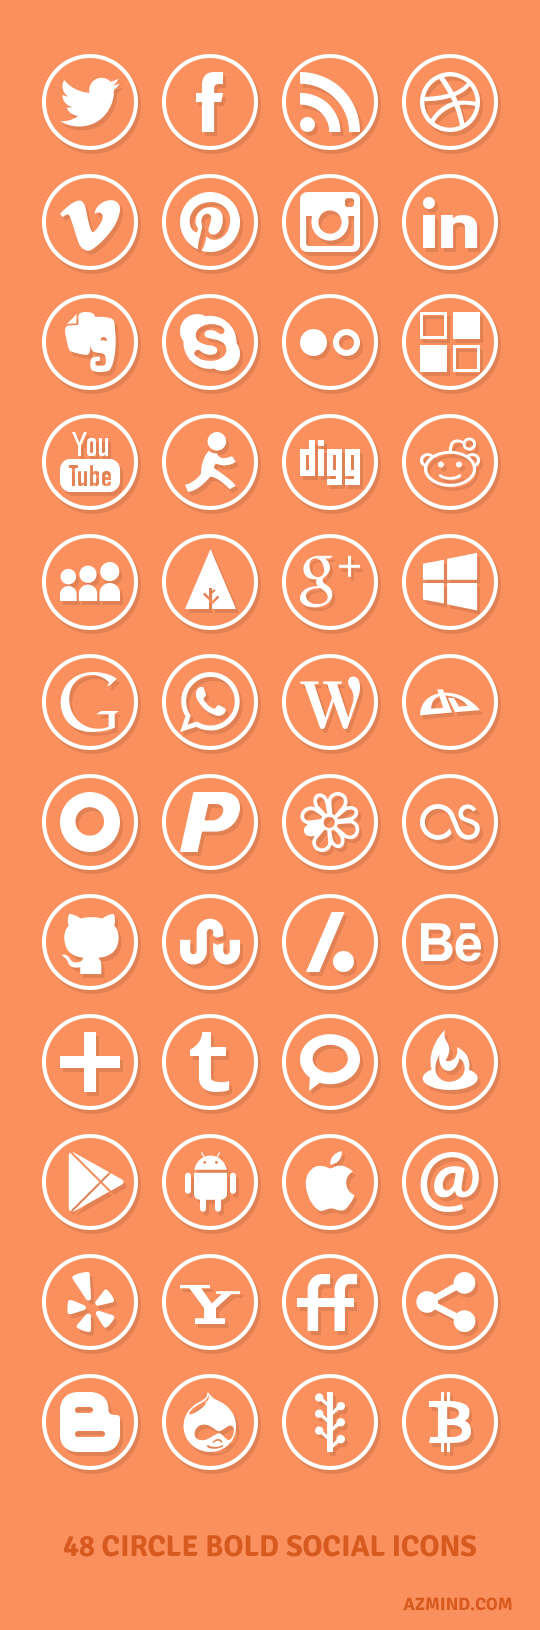 Circle Bold Social Icons Set: 48 Social Media Icons in PSD